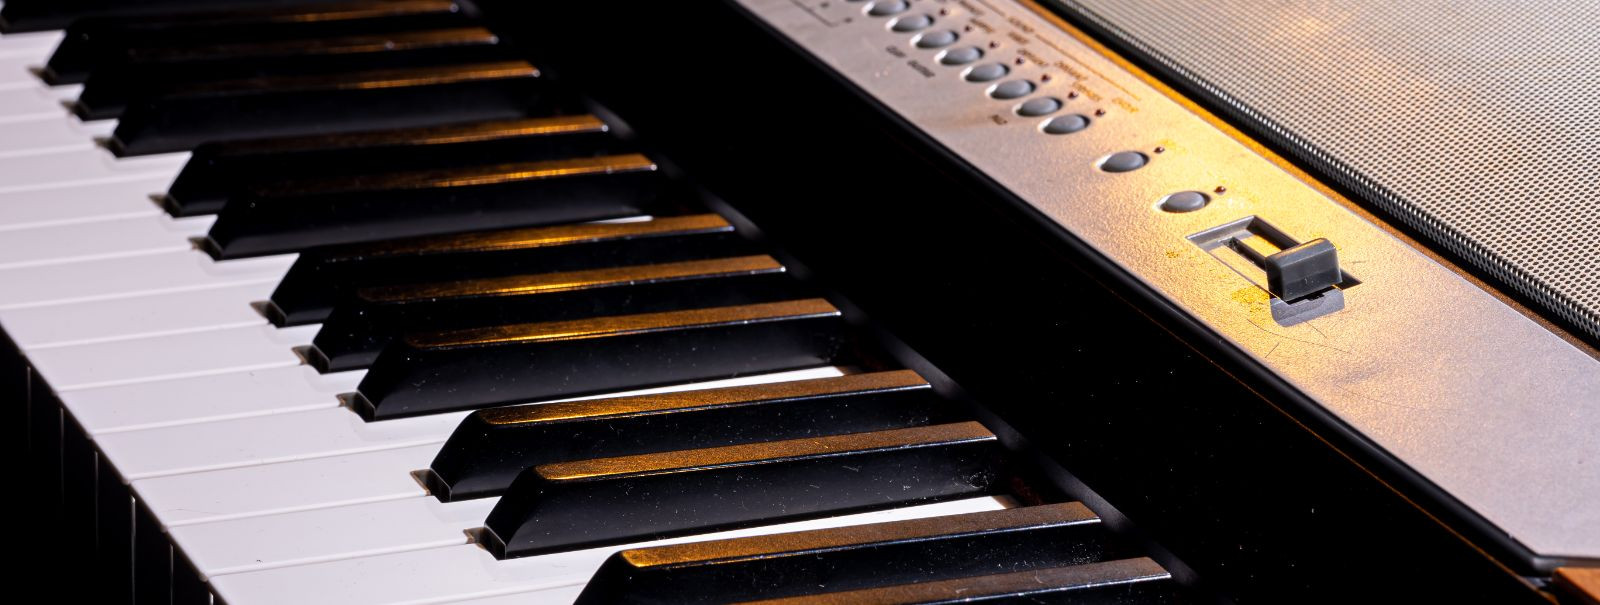 Muusikalisele teekonnale asumine nõuab õiget instrumenti ja paljude jaoks on klaviatuur viisiks meloodiate ja harmooniate valdamiseks. Täiusliku klaviatuuri val